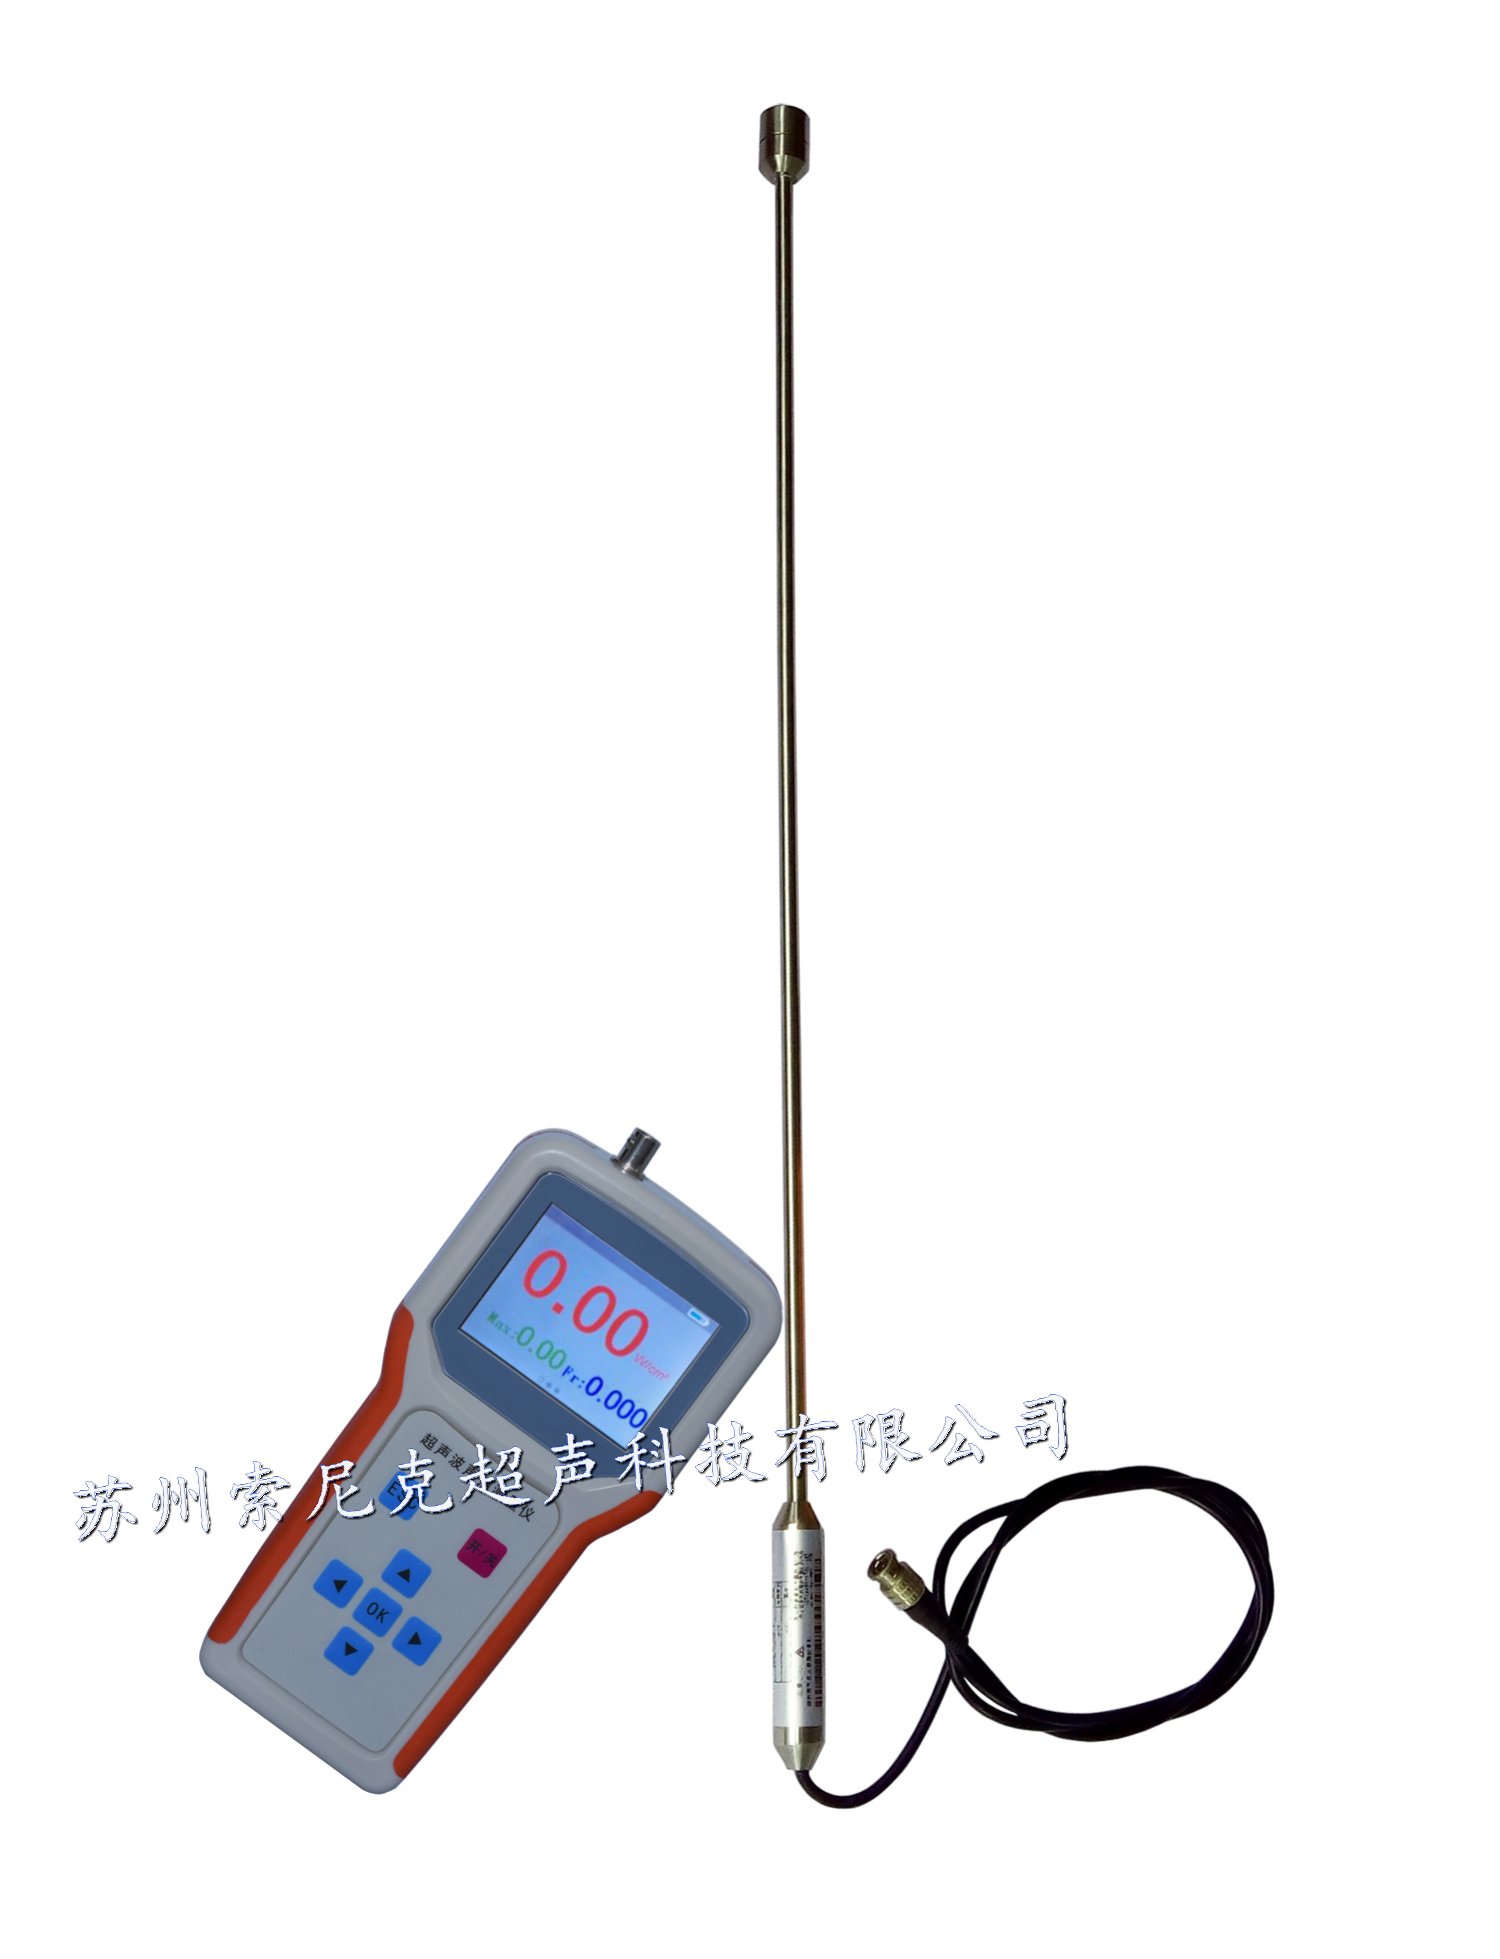 杭州超声波能量分析仪供应,上海超声波能量分析仪参数,超声波能量分析仪使用方法 